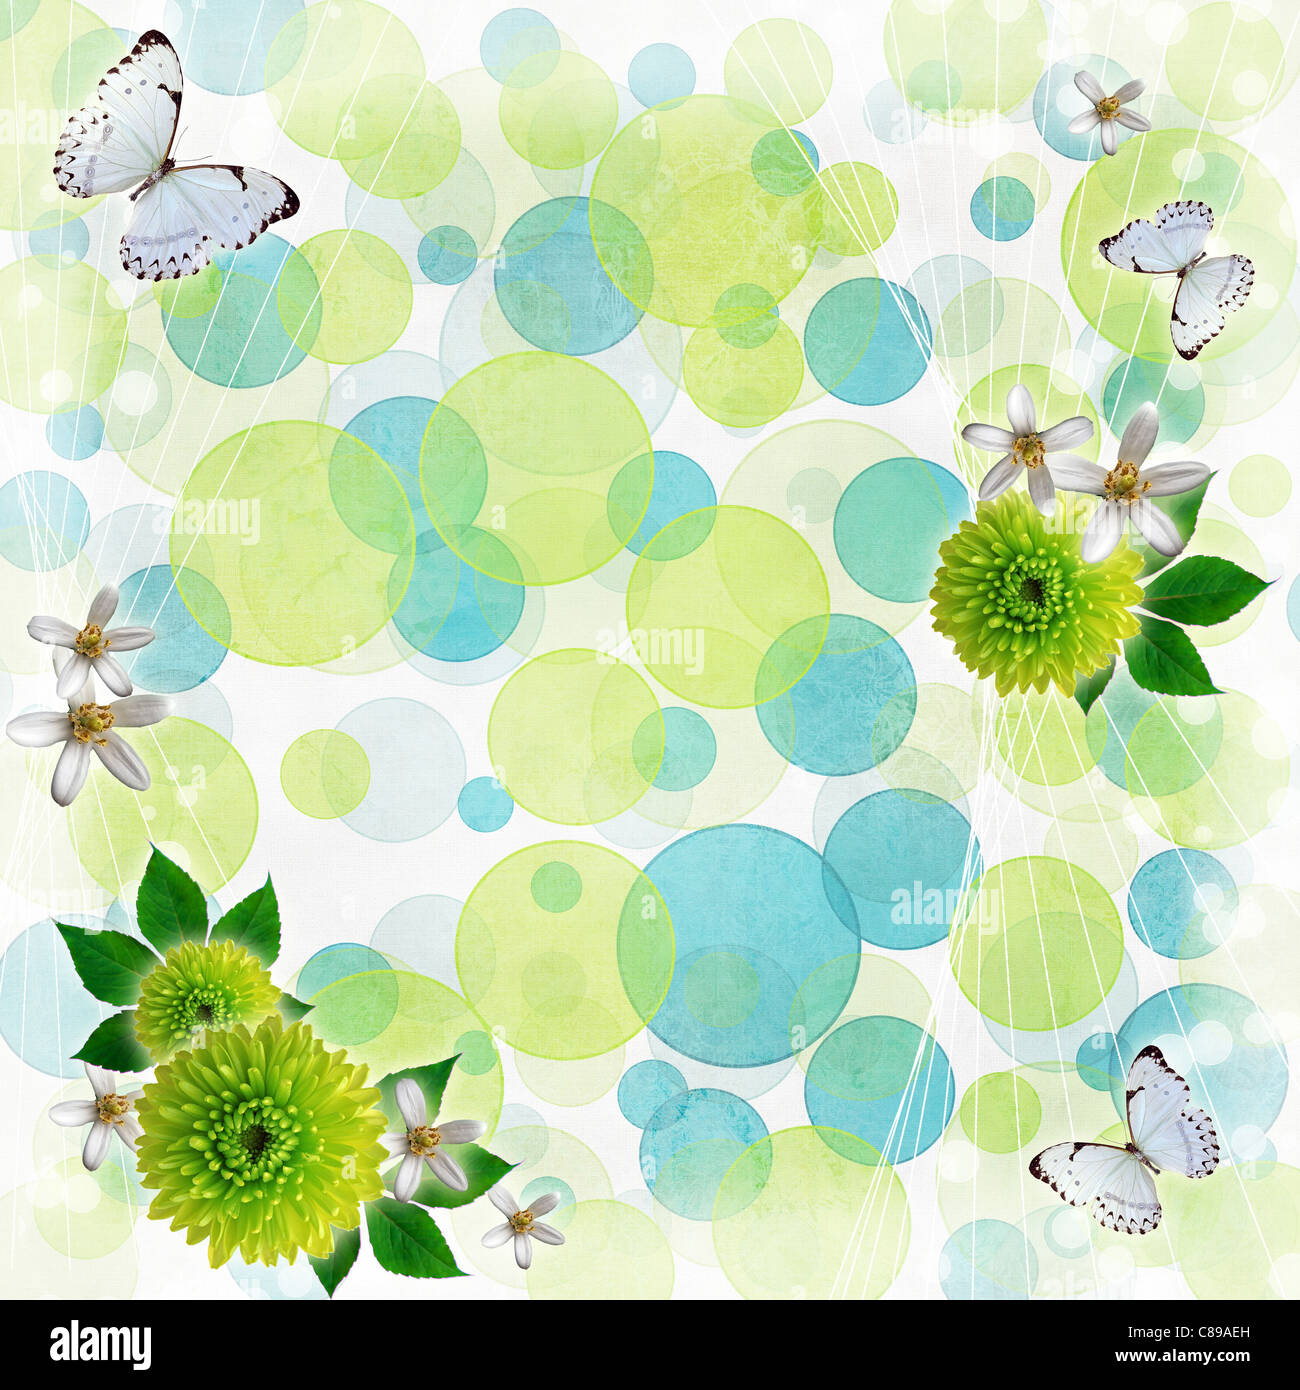 Il verde e il blu di sfondo bokeh di fondo con cornici decorative, farfalle e fiori Foto Stock